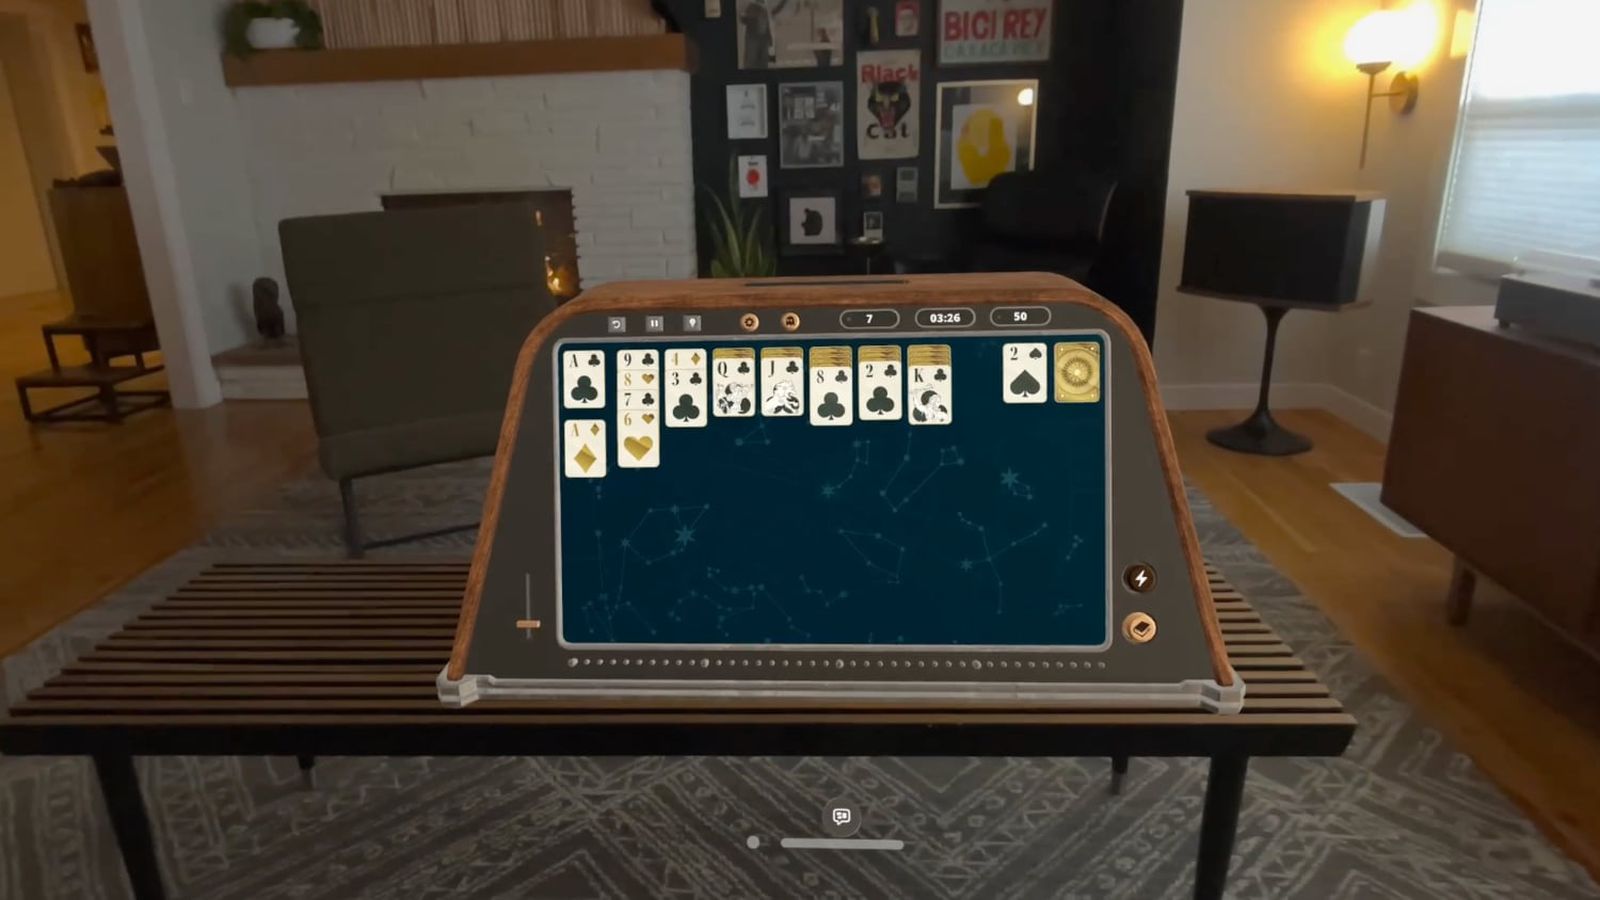 Από το iPhoneIslam.com, ένα εικονικό παιχνίδι πασιέντζας που παίζεται σε μια συσκευή επαυξημένης πραγματικότητας σε ένα μοντέρνα διακοσμημένο σαλόνι την εβδομάδα 19-25 Απριλίου.